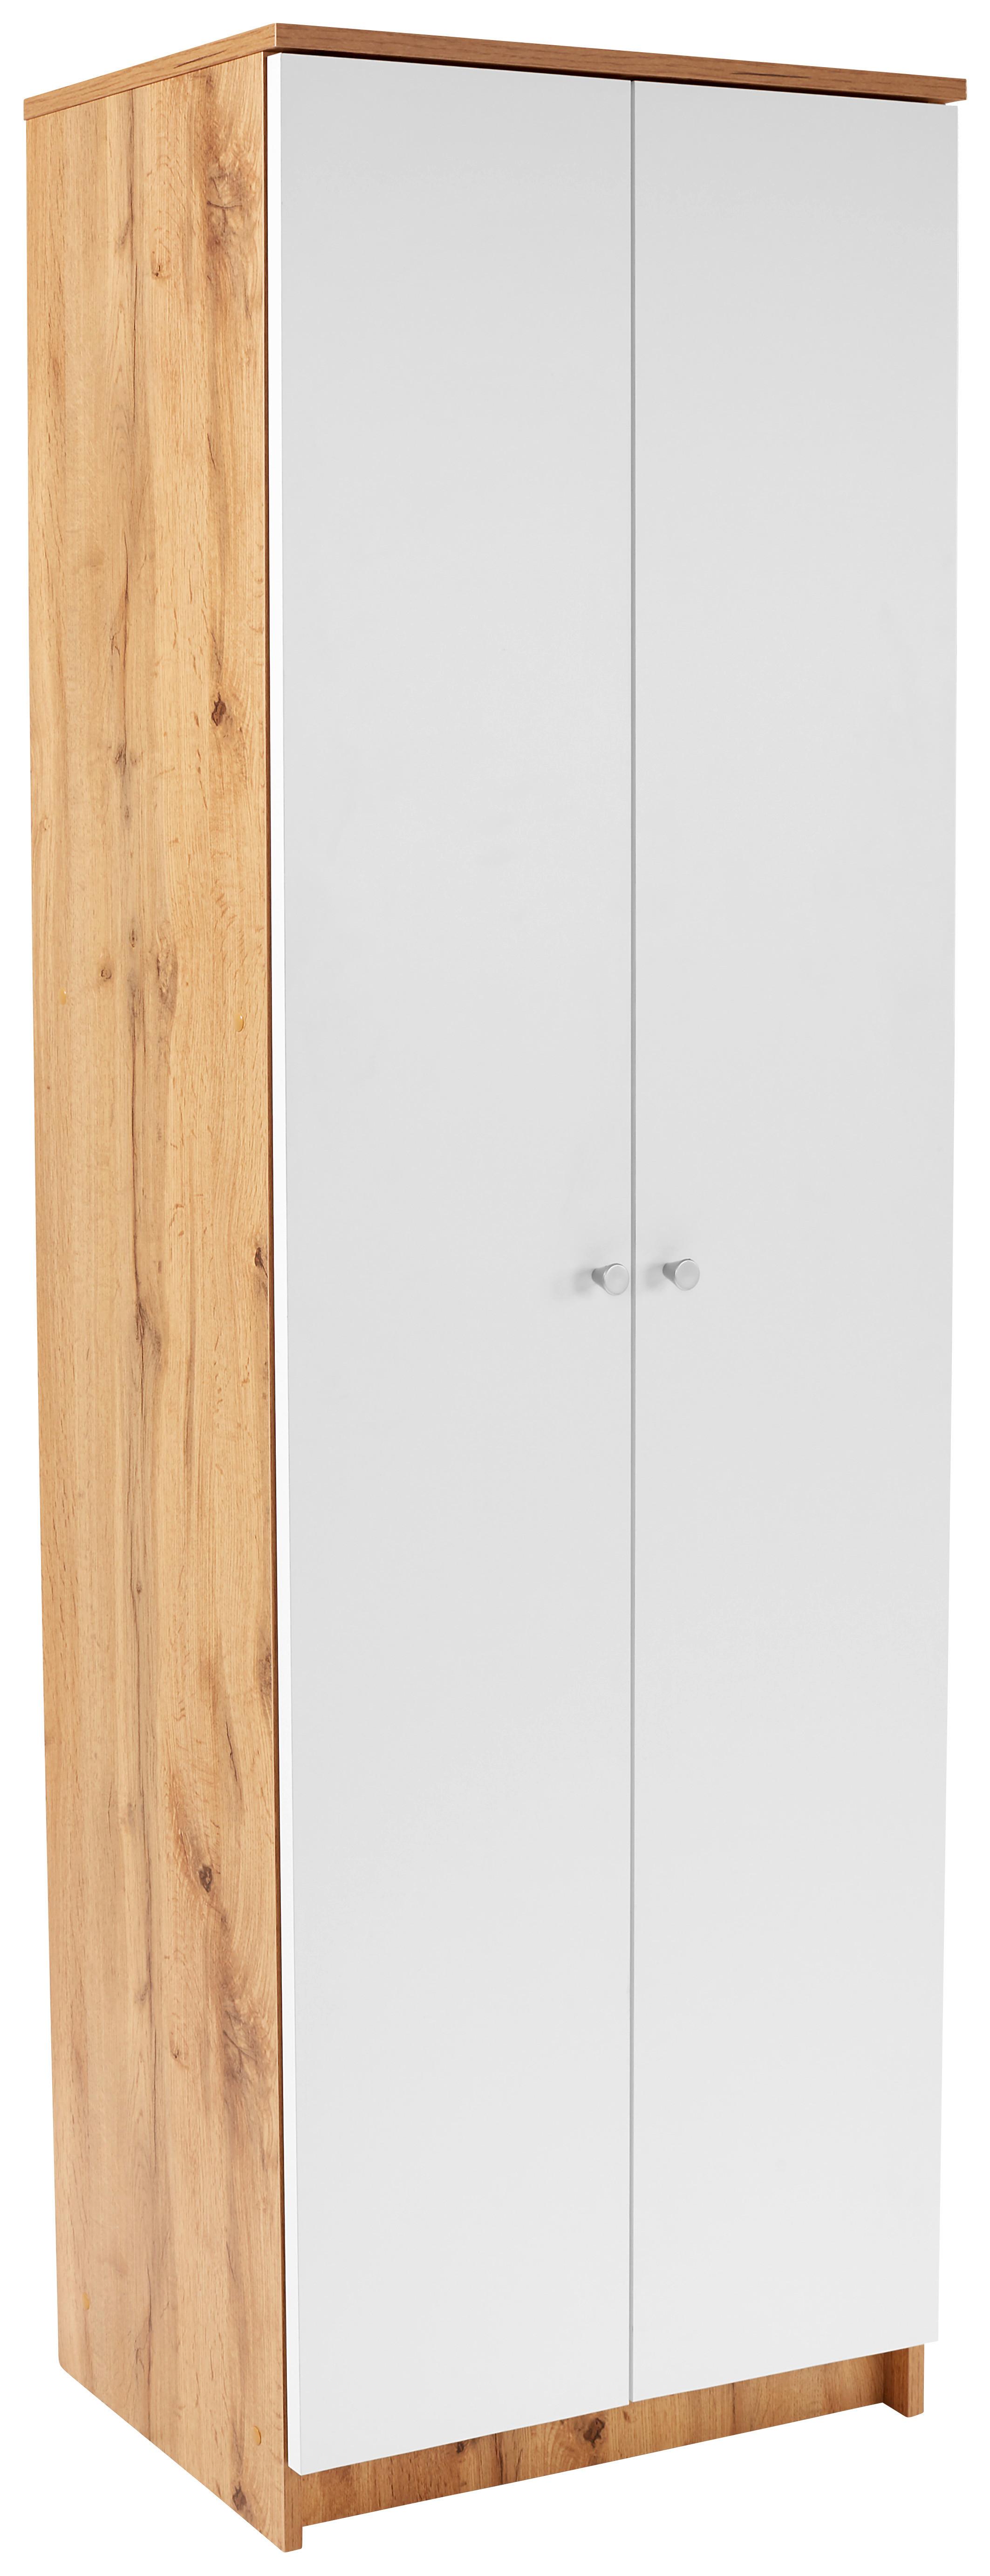 Botník Kv05 -Cenový Trhák - bílá/barvy dubu, Moderní (62,4/178,6/35,4cm)